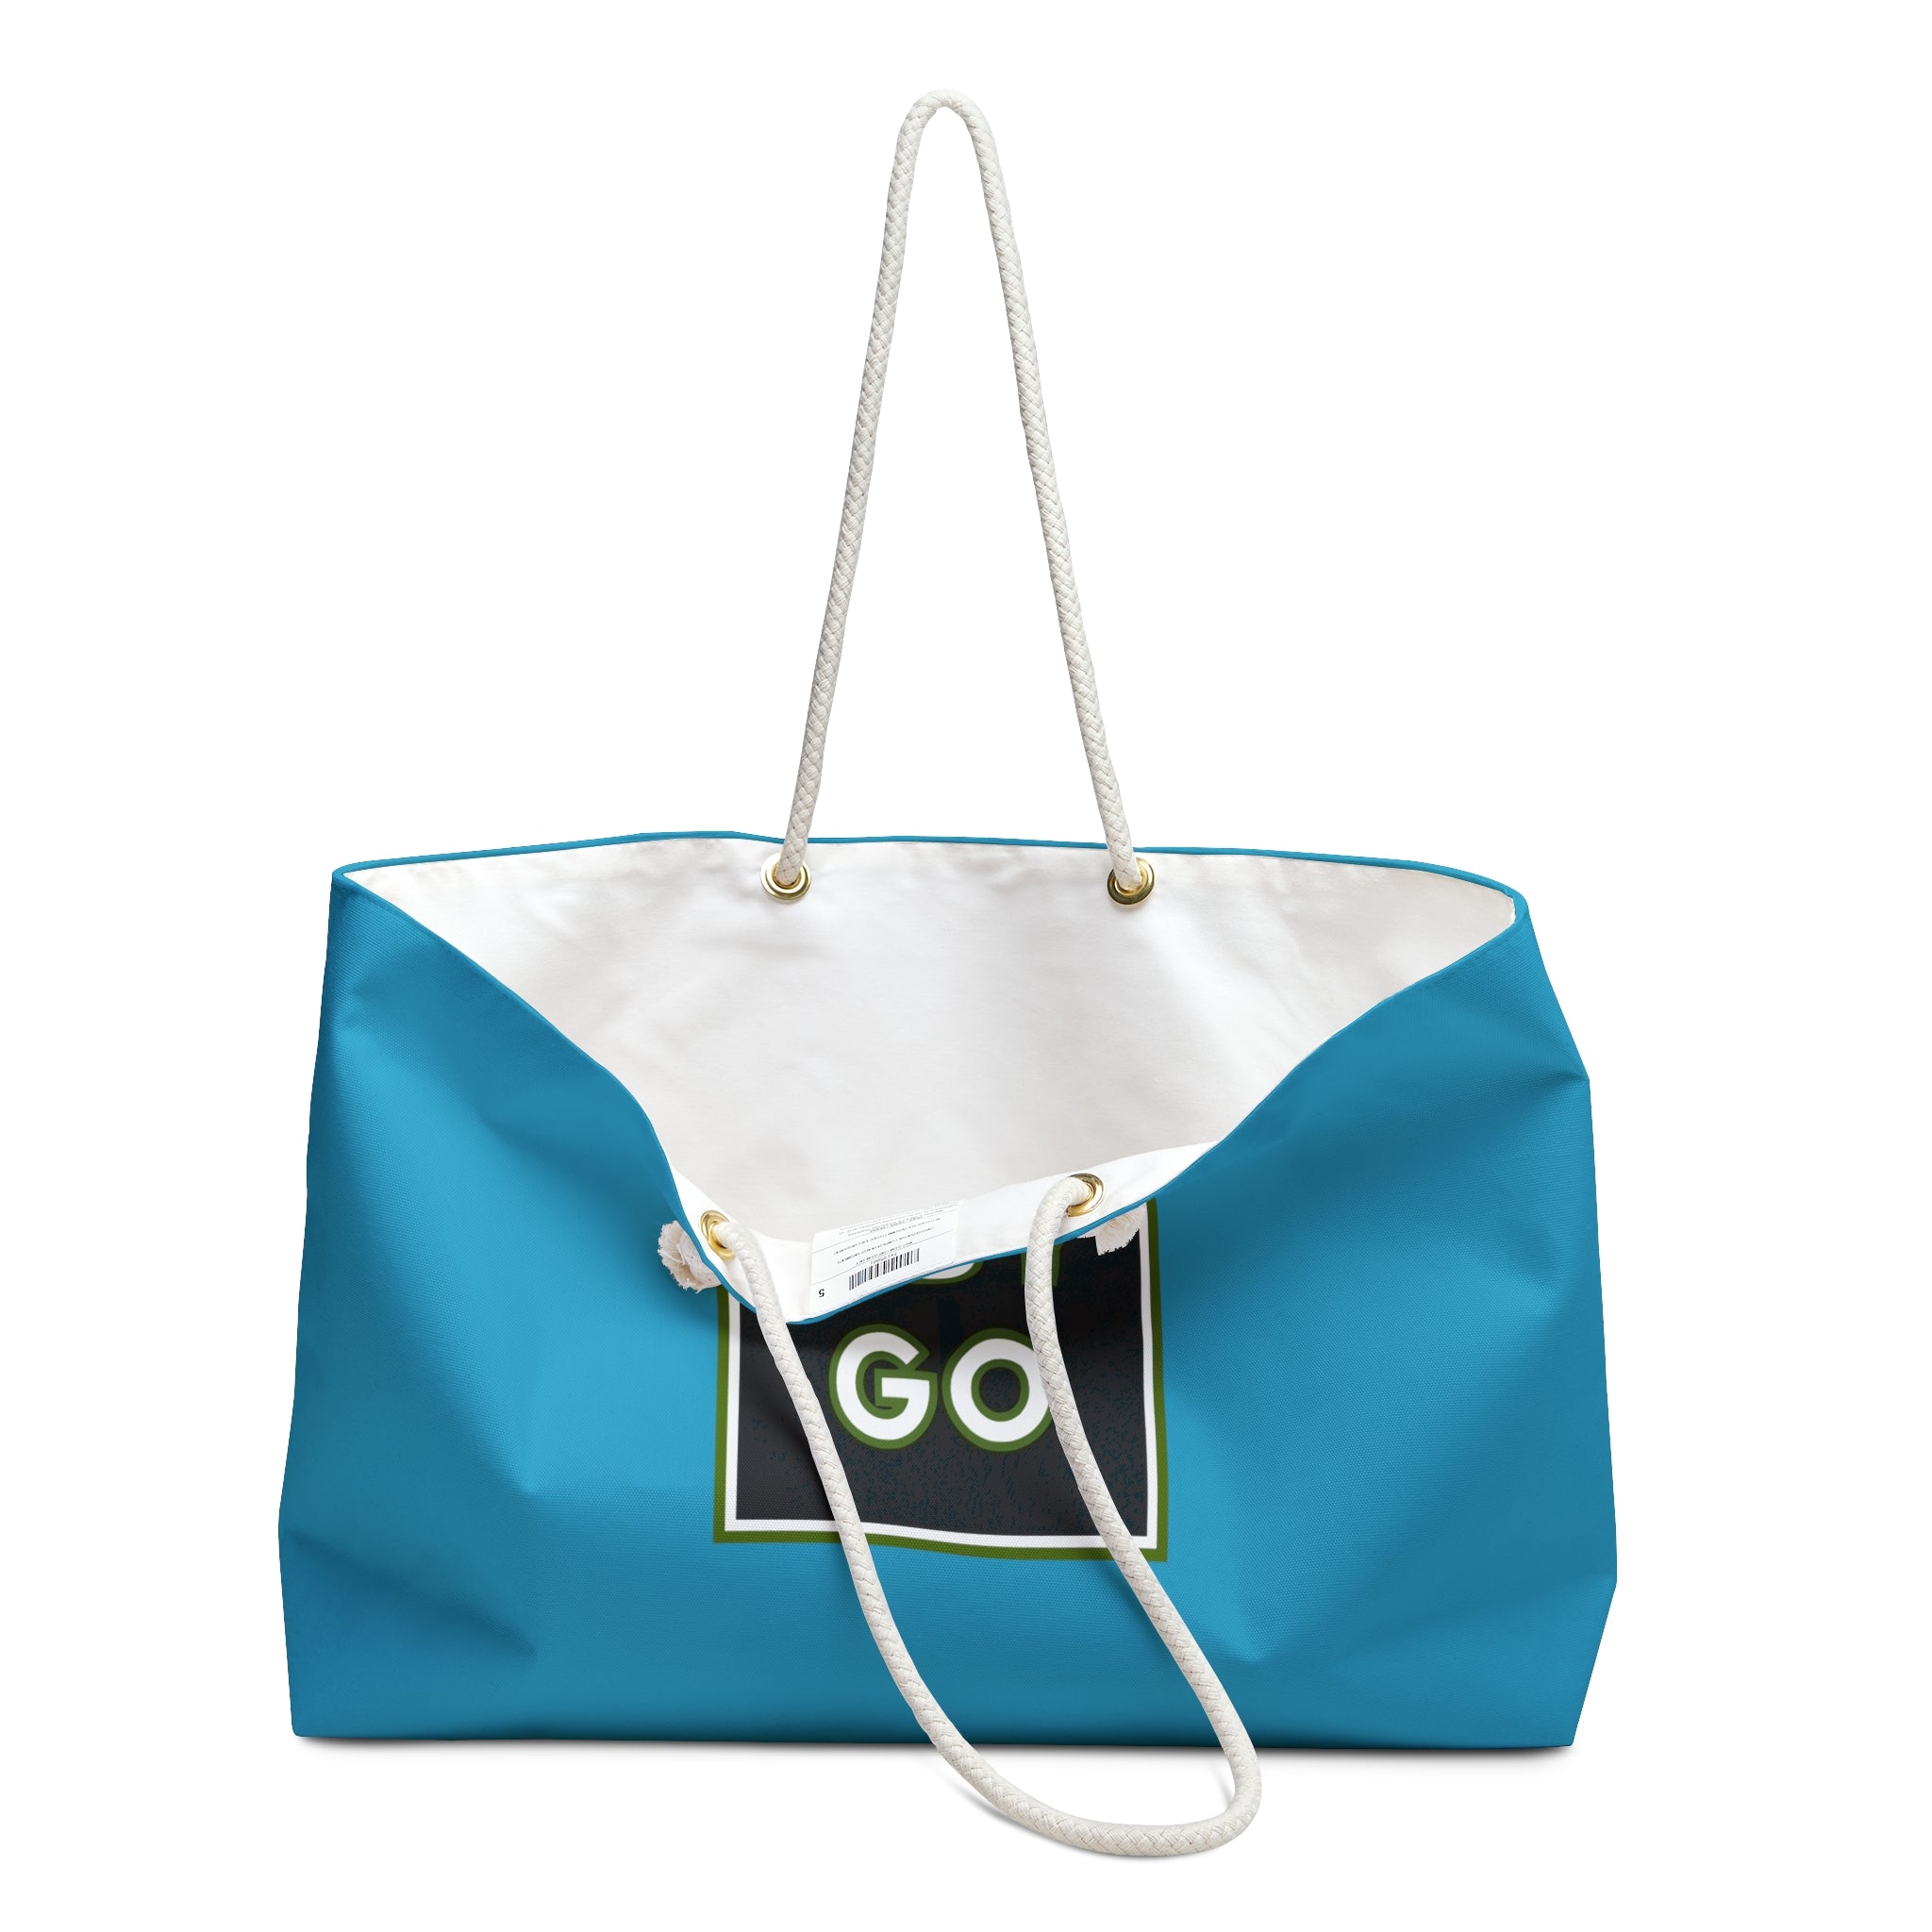 Turquoise USYGO Weekender Bag